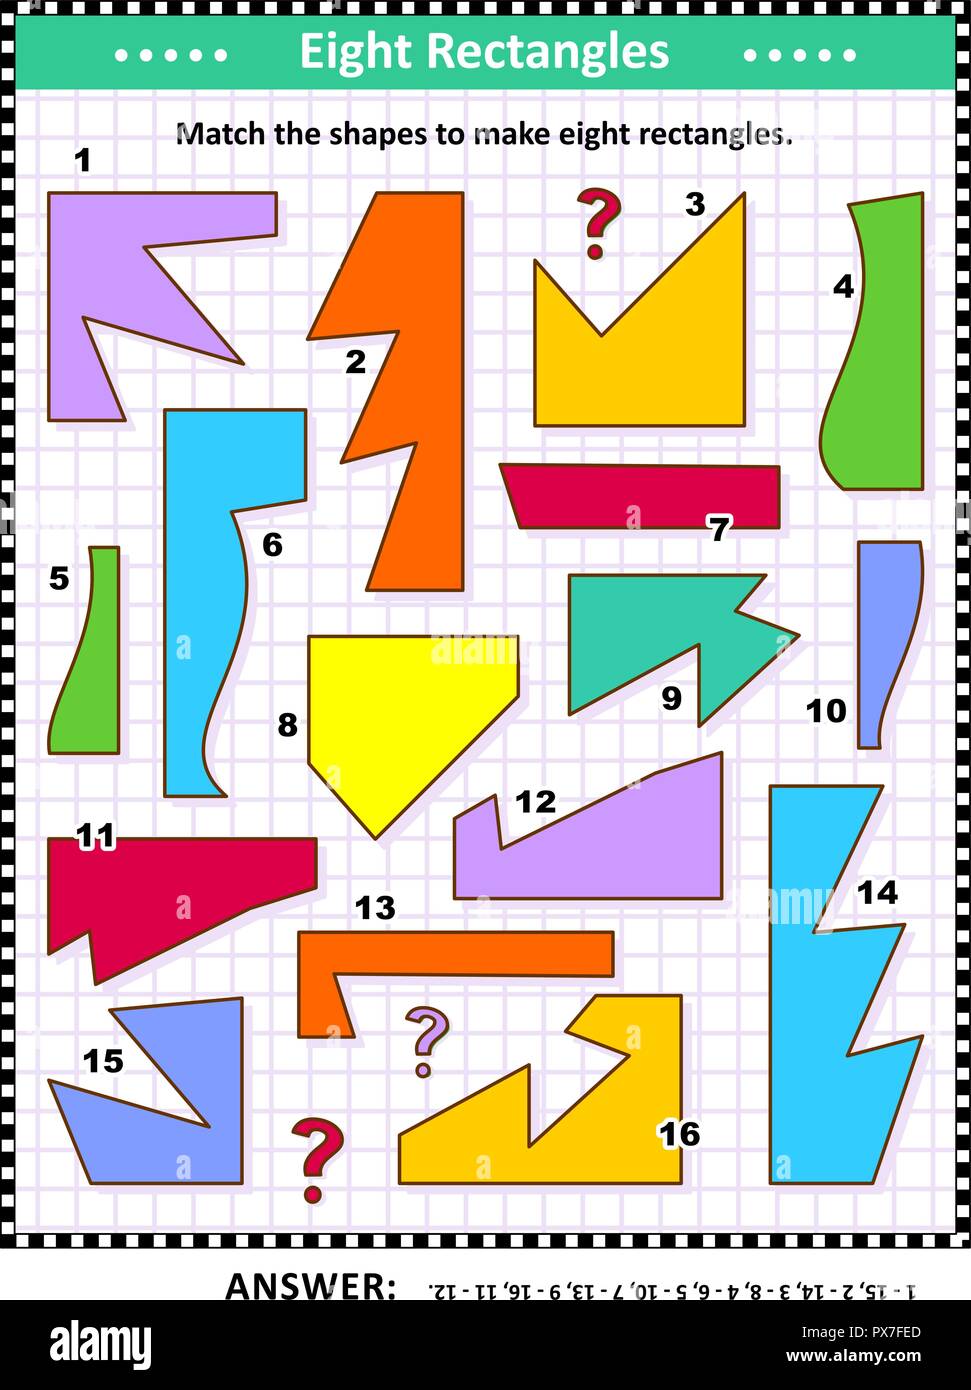 IQ e spaziale delle competenze matematiche di formazione visual puzzle: corrispondono le forme per rendere otto rettangoli. Risposta inclusa. Illustrazione Vettoriale